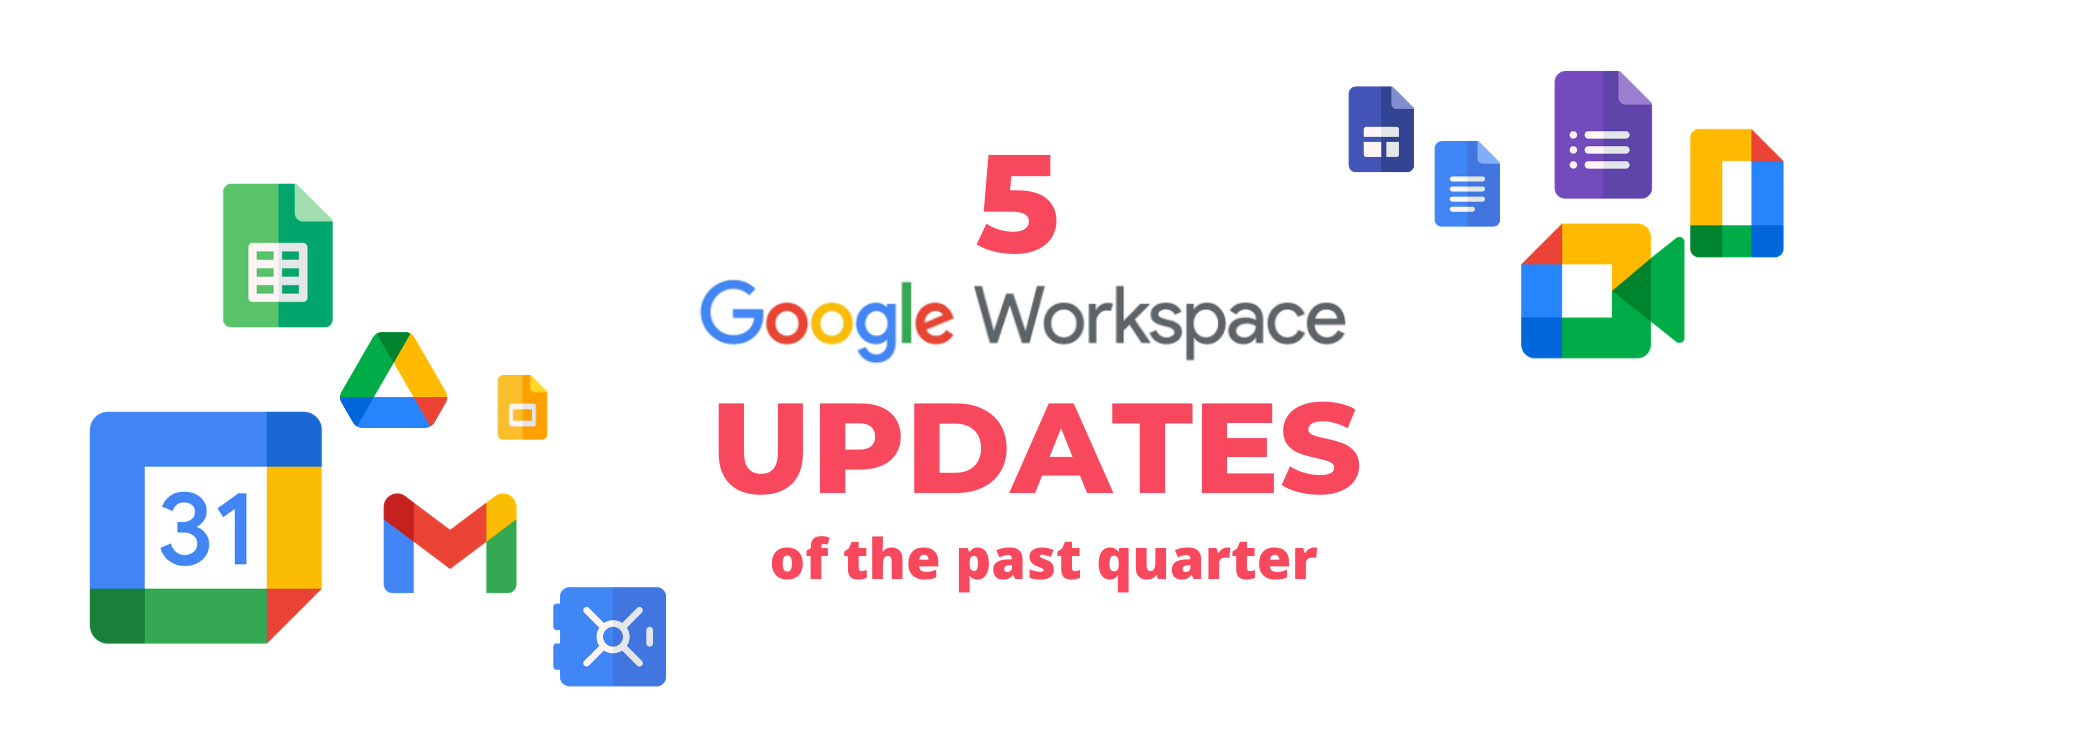 5 Google Workspace updates of Q3